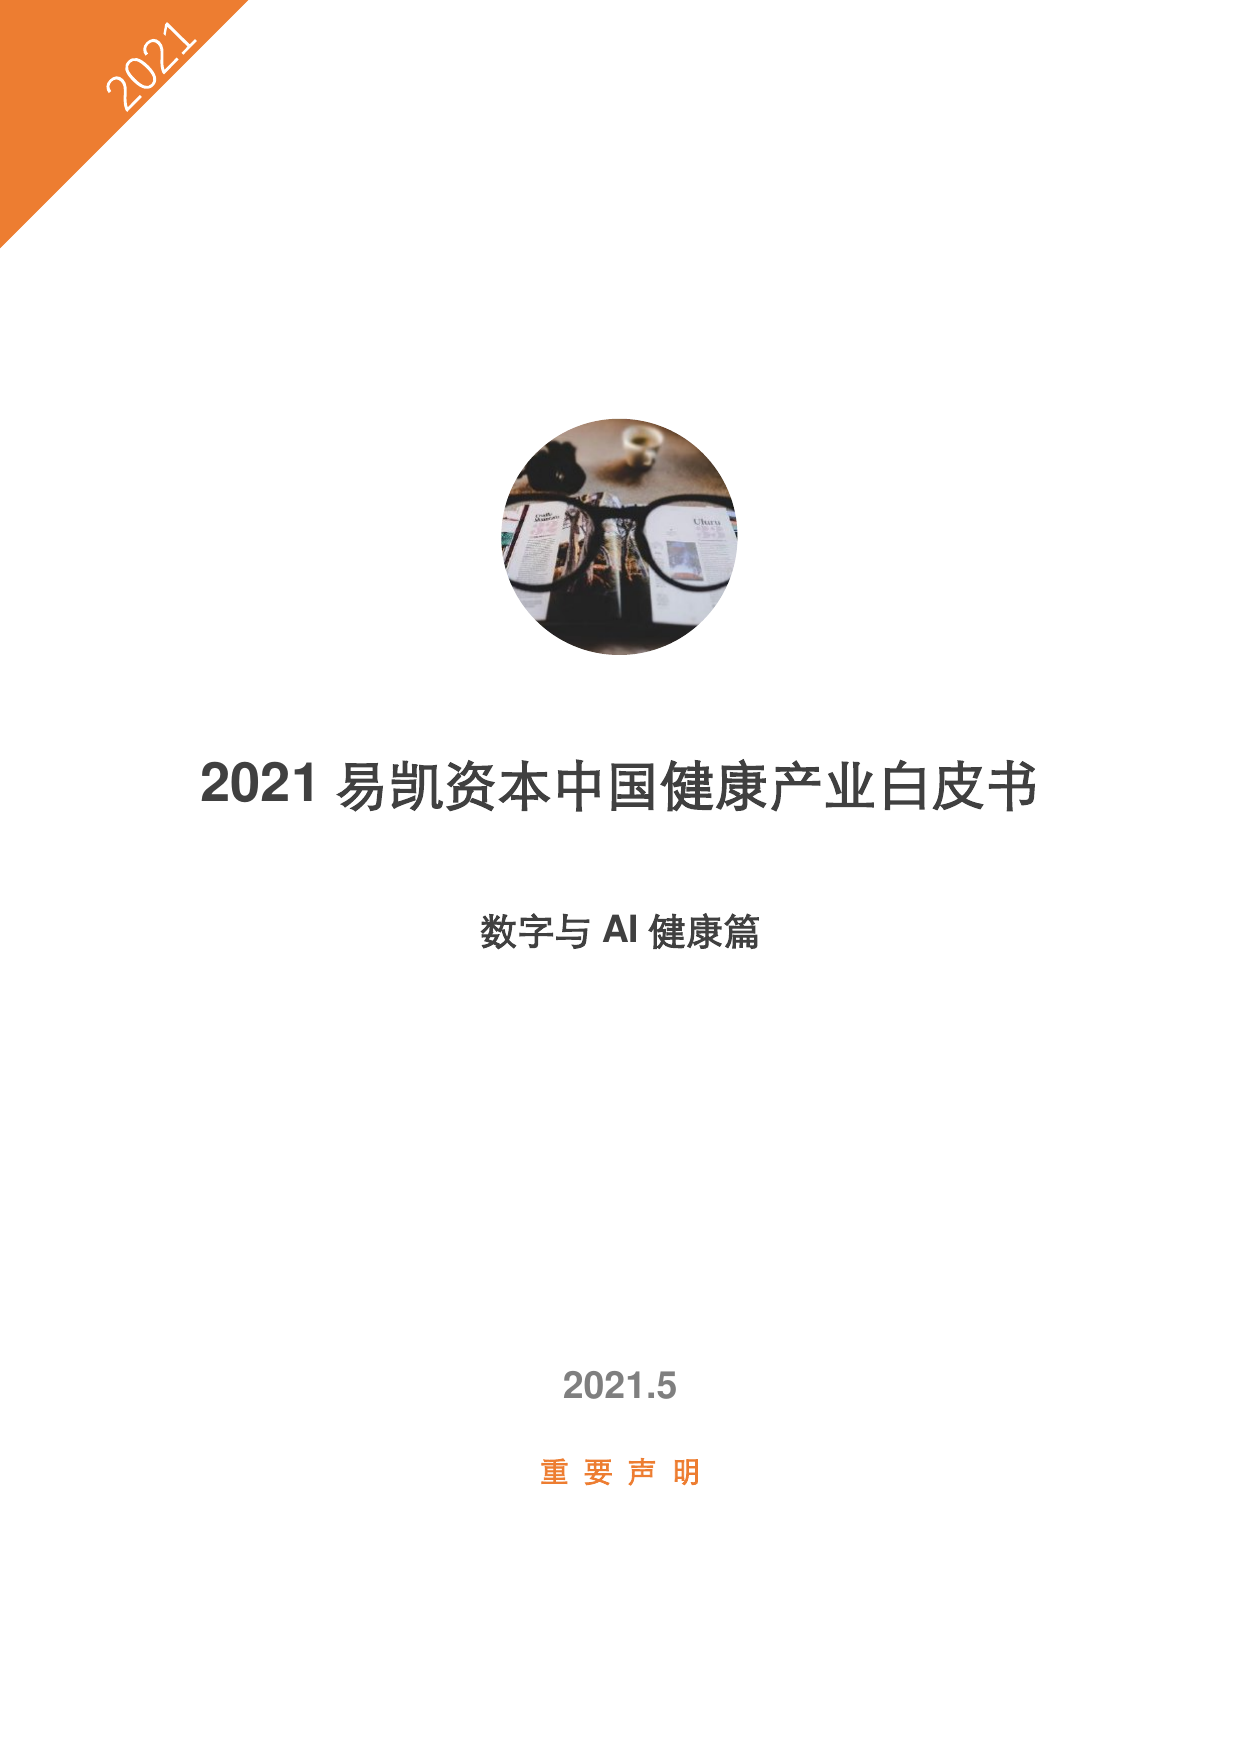 2021易凯资本中国健康产业白皮书—数字与AI健康篇-易凯资本-2021.5-22页